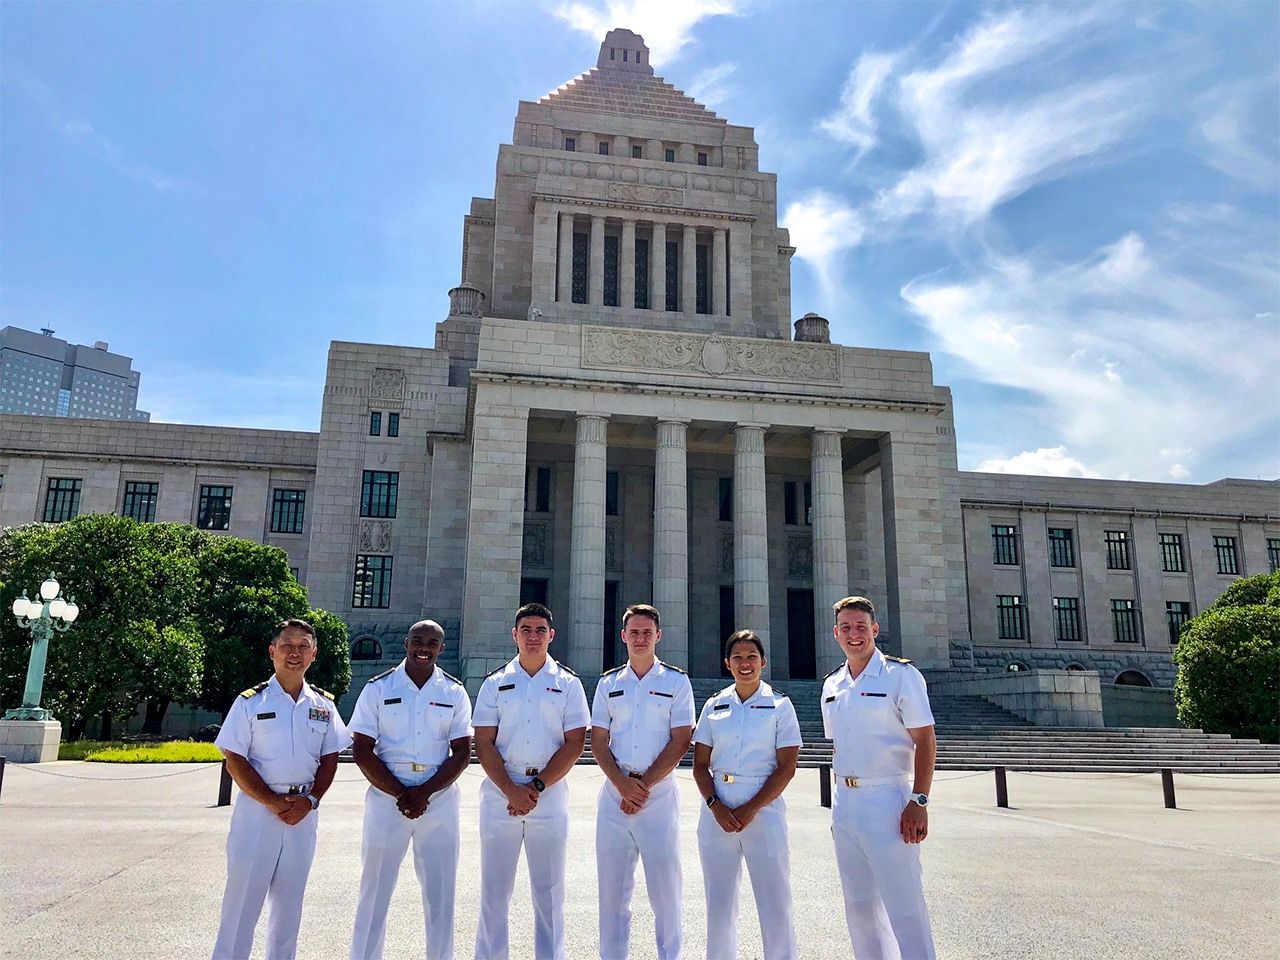 صورة يعرضها مائياما تظهر رجال البحرية حول مبنى البرلمان الوطني خلال جولة دراسية في اليابان.